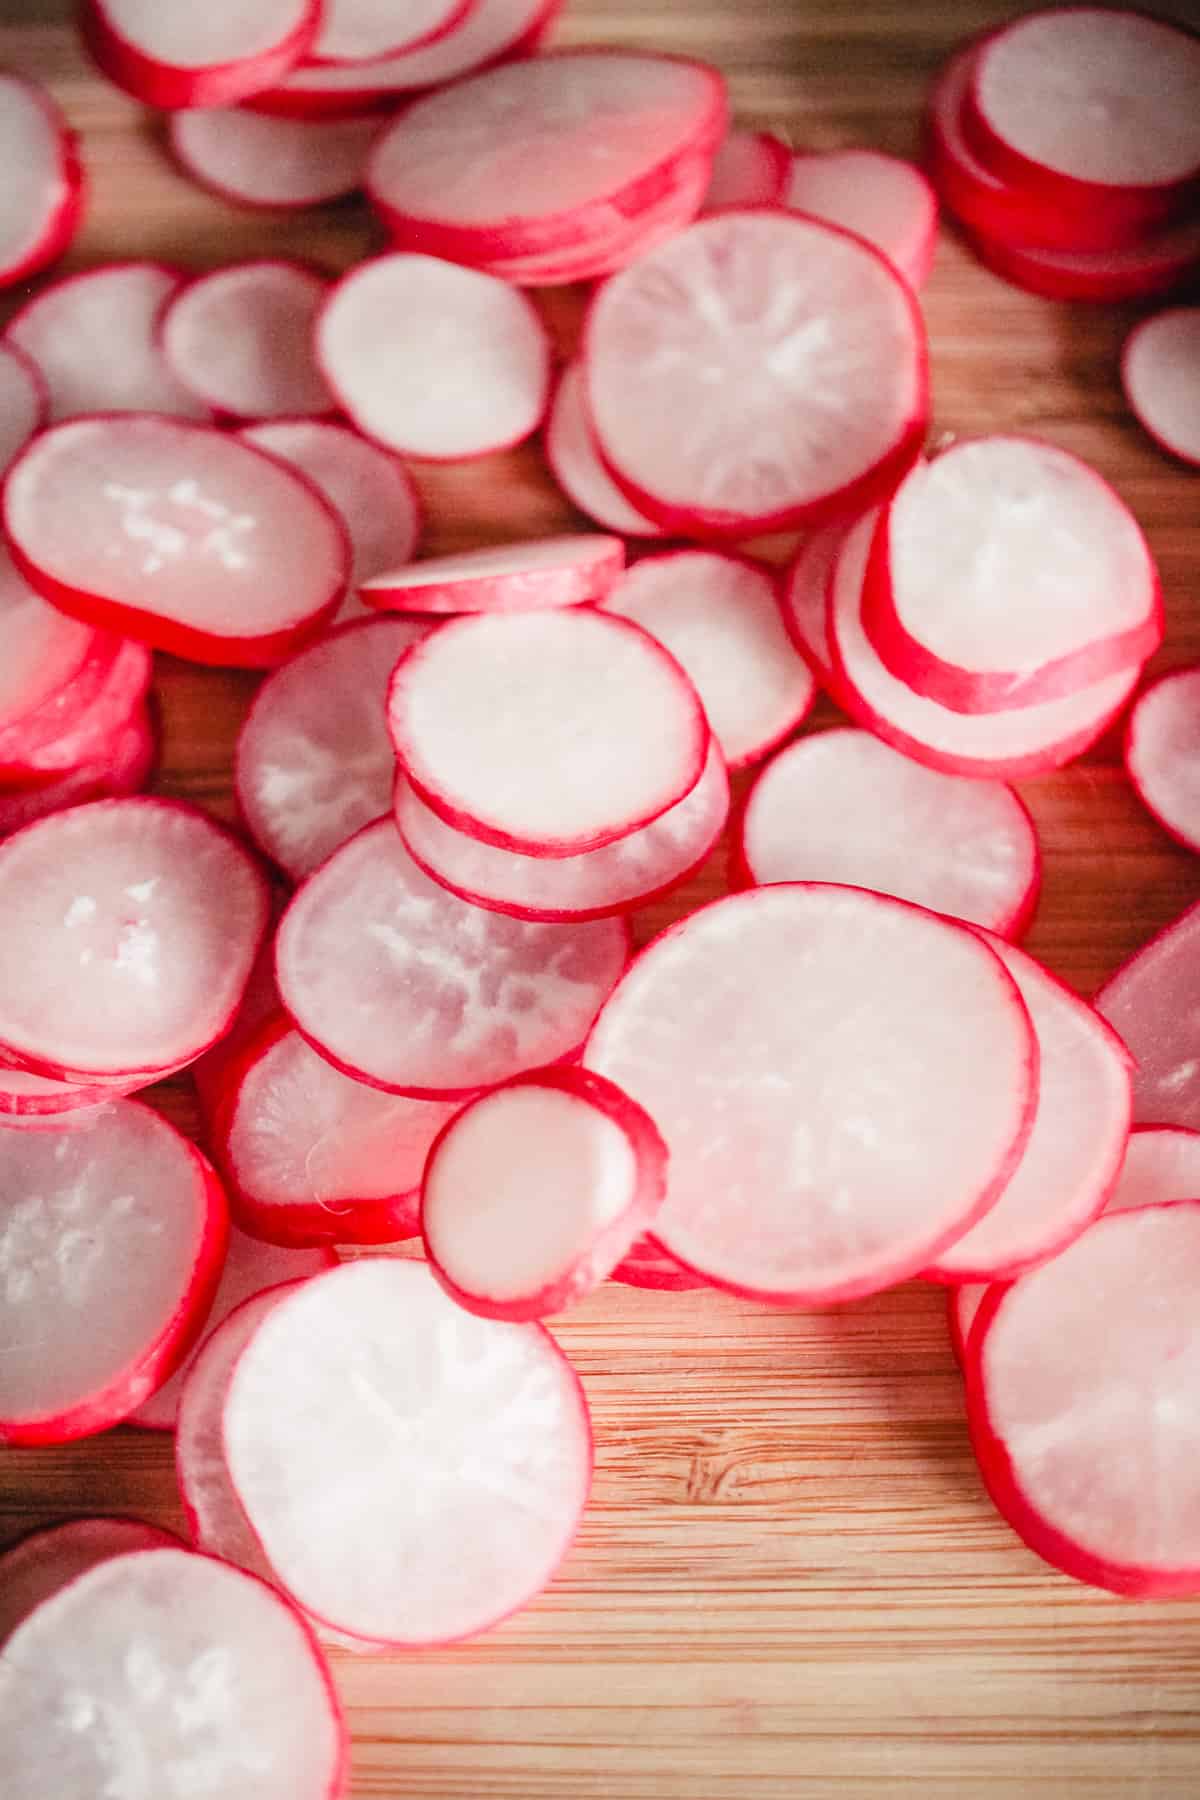 Sliced radishes on a cutting board.